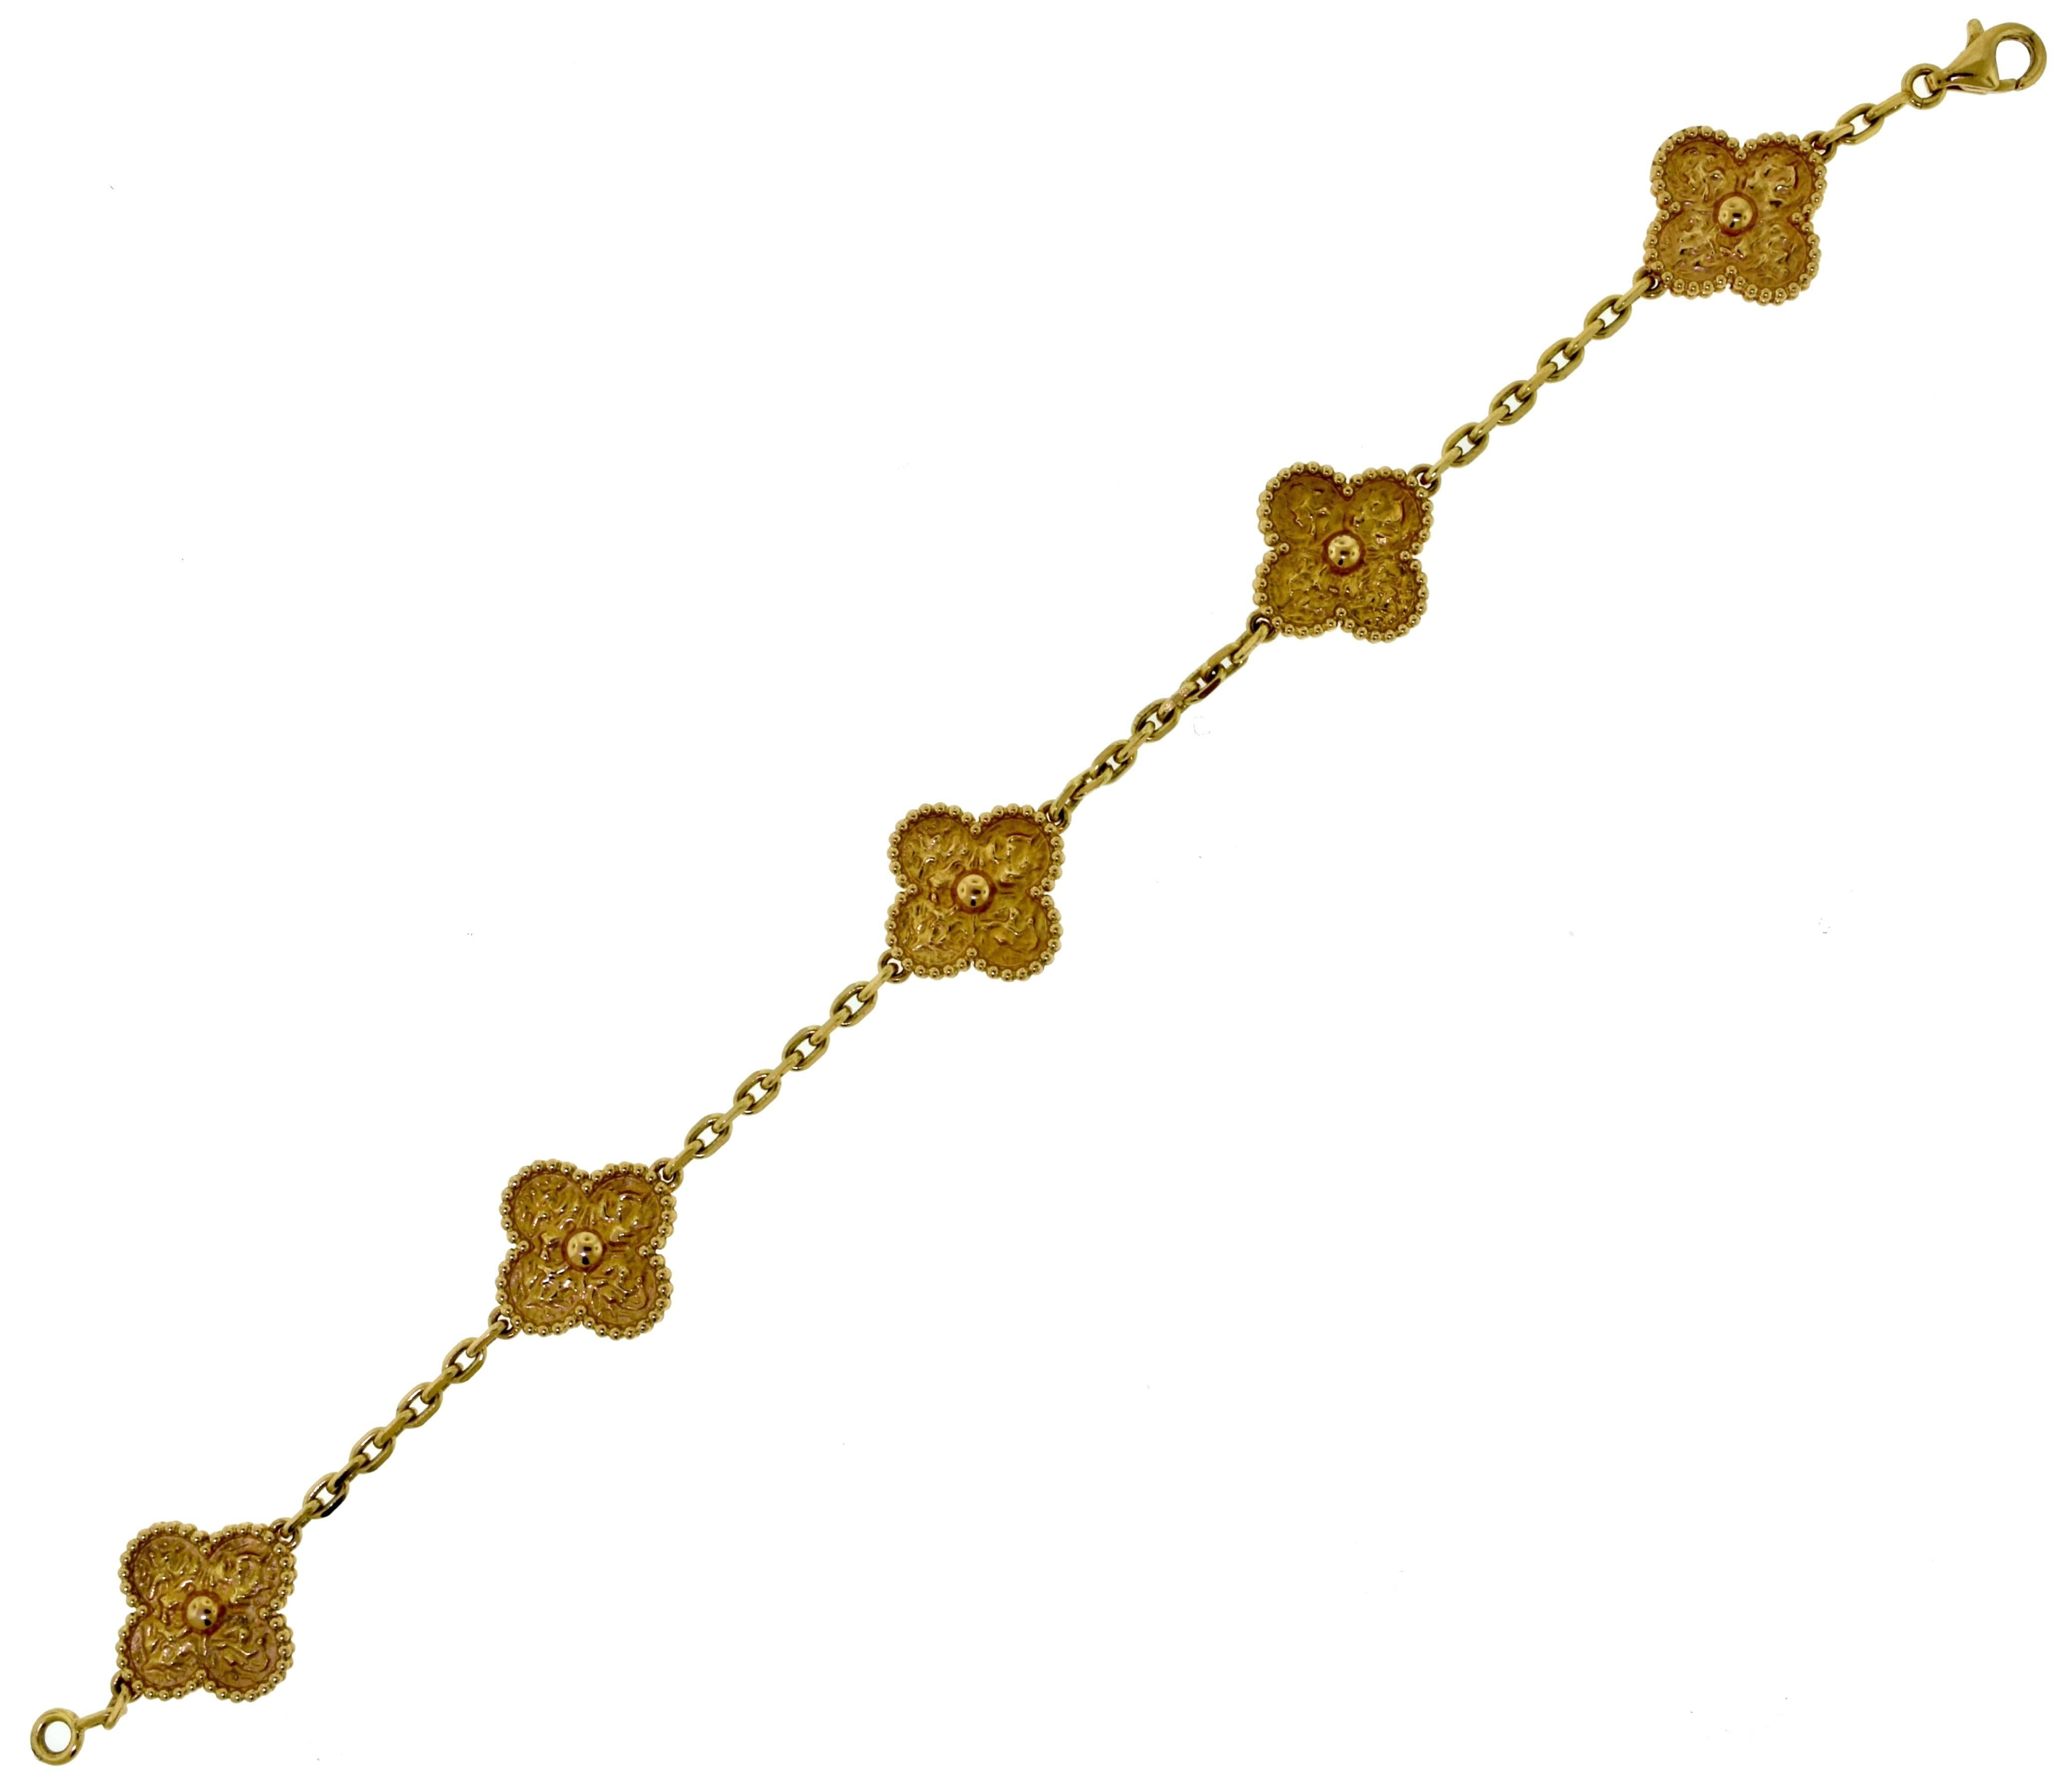 Type: 10 Motif Necklace
           5 Motif Bracelet
Designer: Van Cleef & Arpels
Collection: Vintage Alhambra
Metal: Rose Gold
Metal Purity: 18k ​​​​​​​
​​​​​​​Bracelet 
Total Item Weight (g): 14.4
Bracelet Length: 7.5 inches
Hallmark: VCA Au750